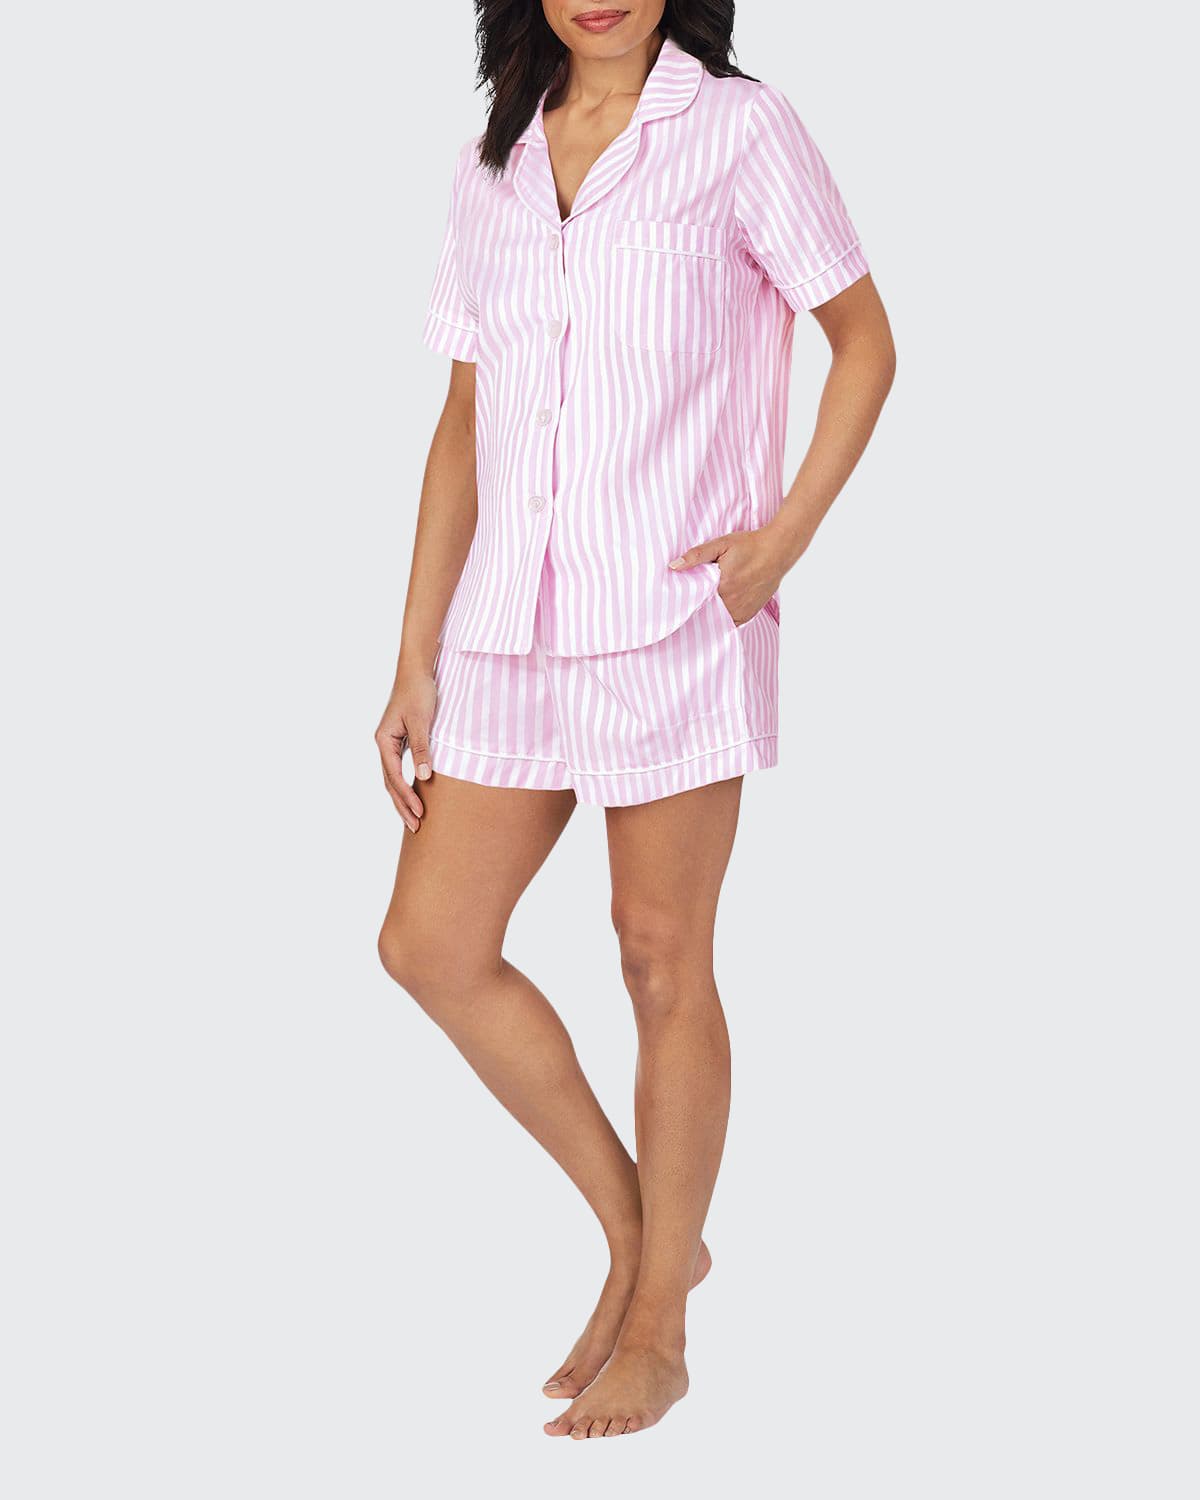 BedHead Pajamas 3D Striped Cotton Shorty Pajama Set